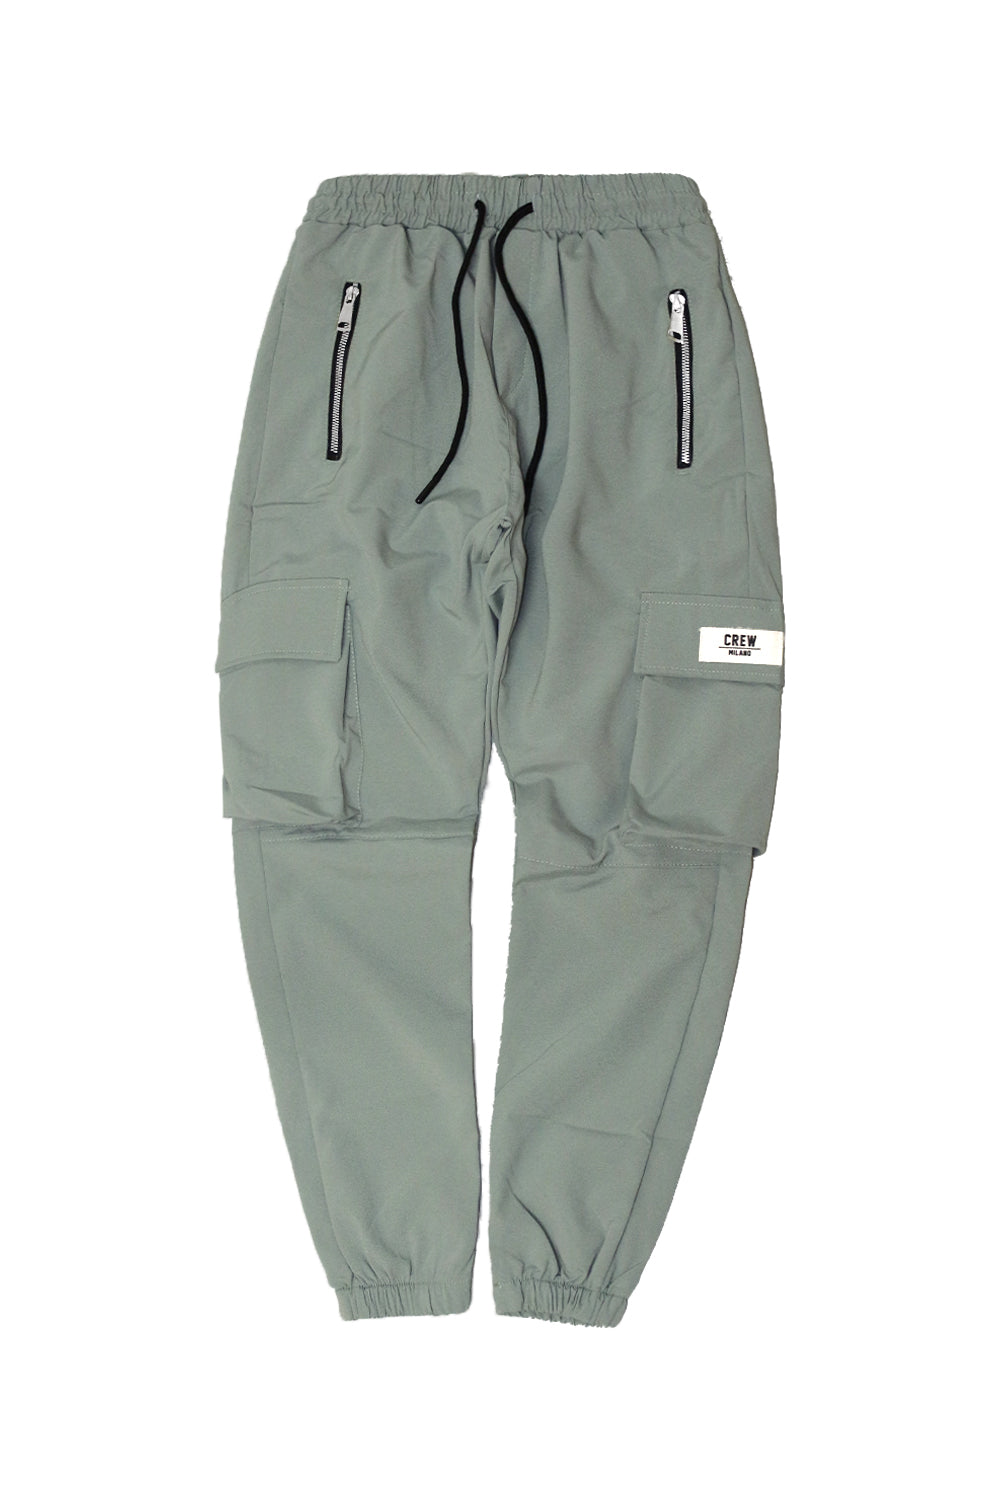 CREW Mint Green Cargo Pants Zipper Rubber